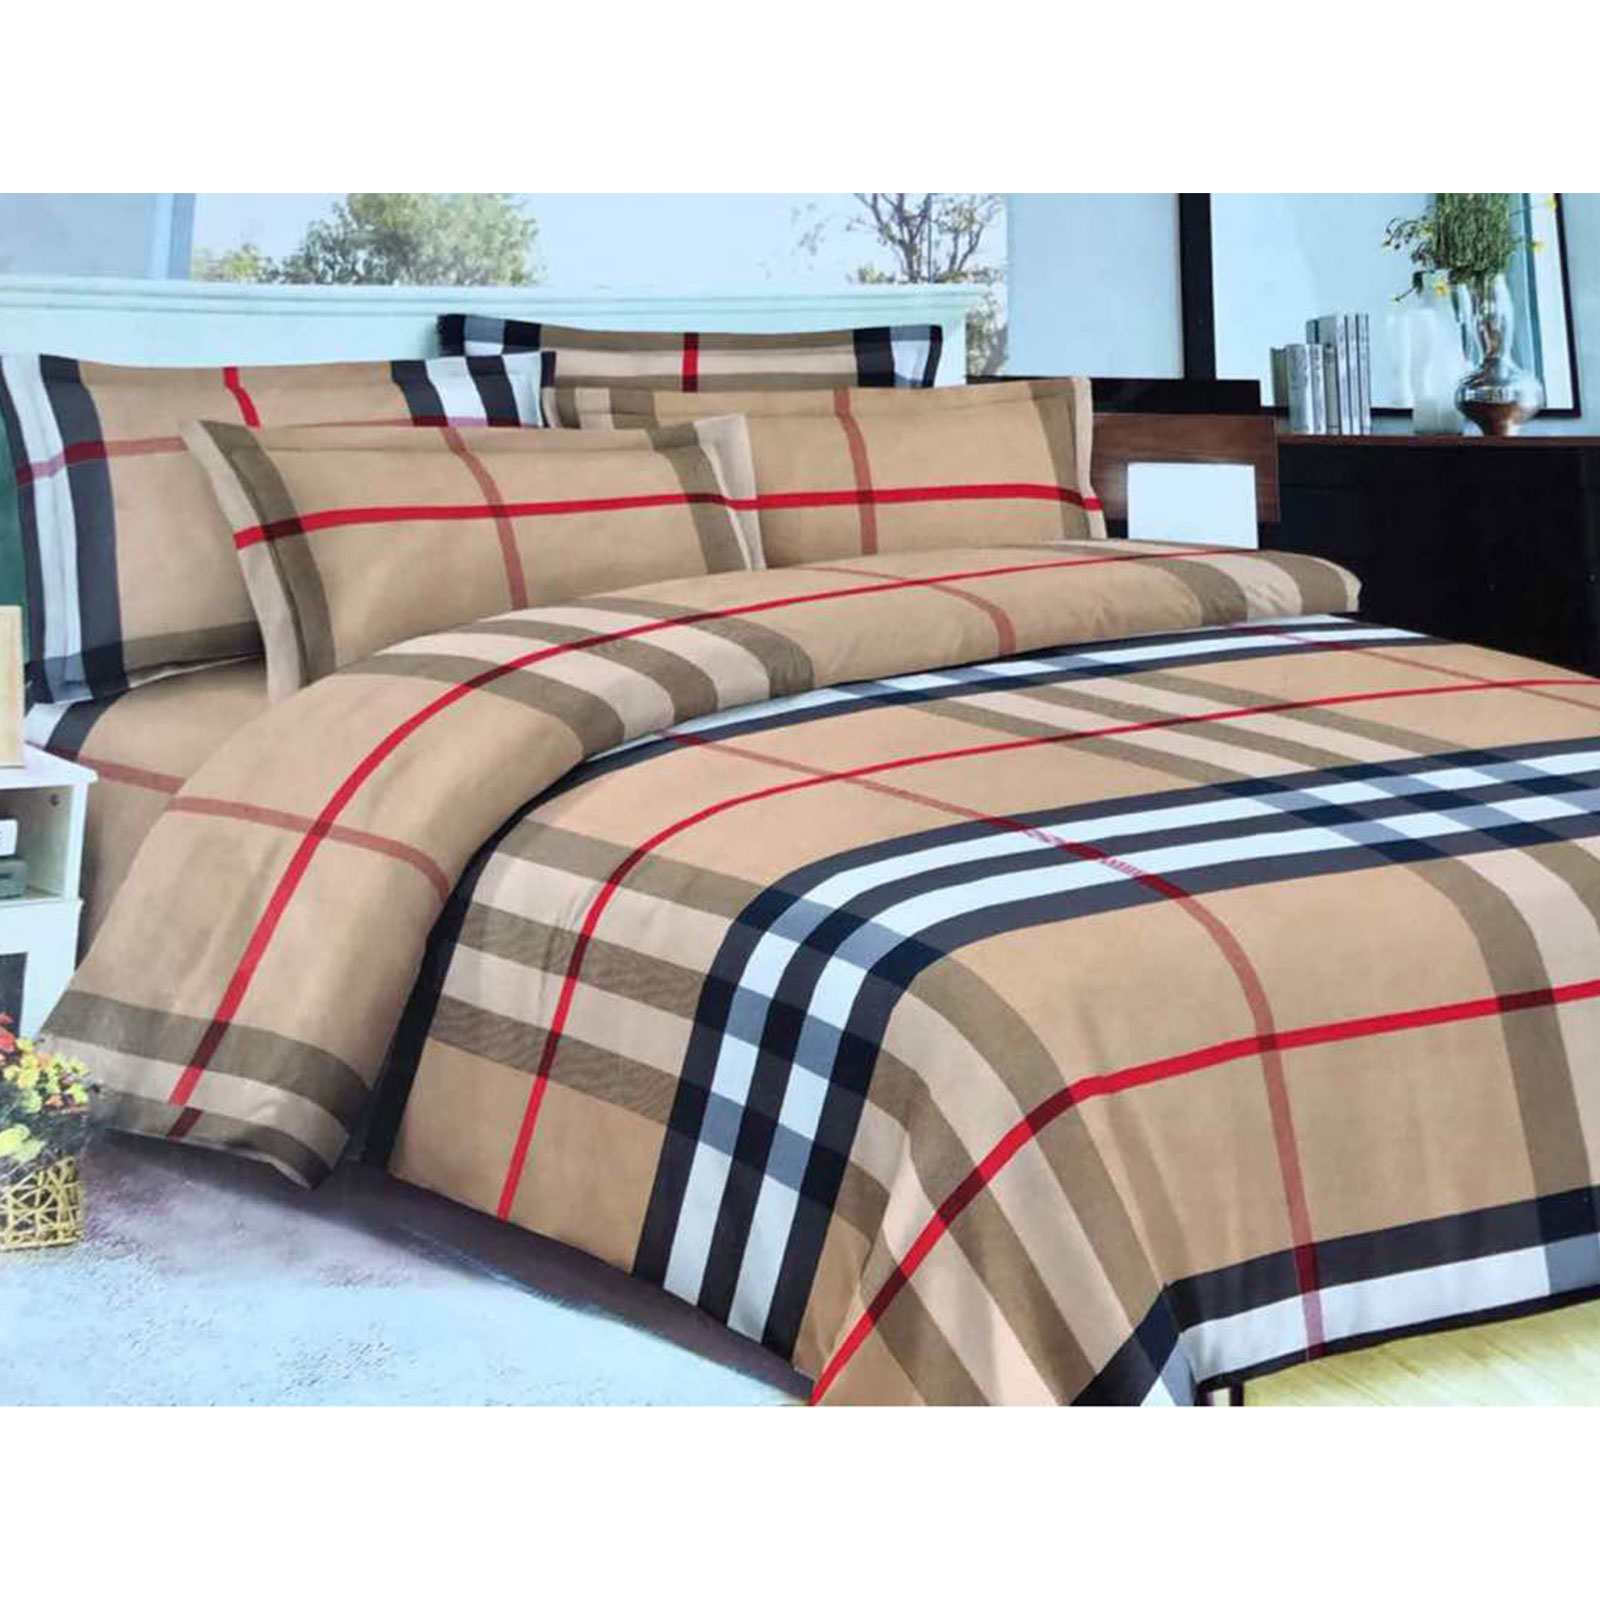 burberry comforter bed set